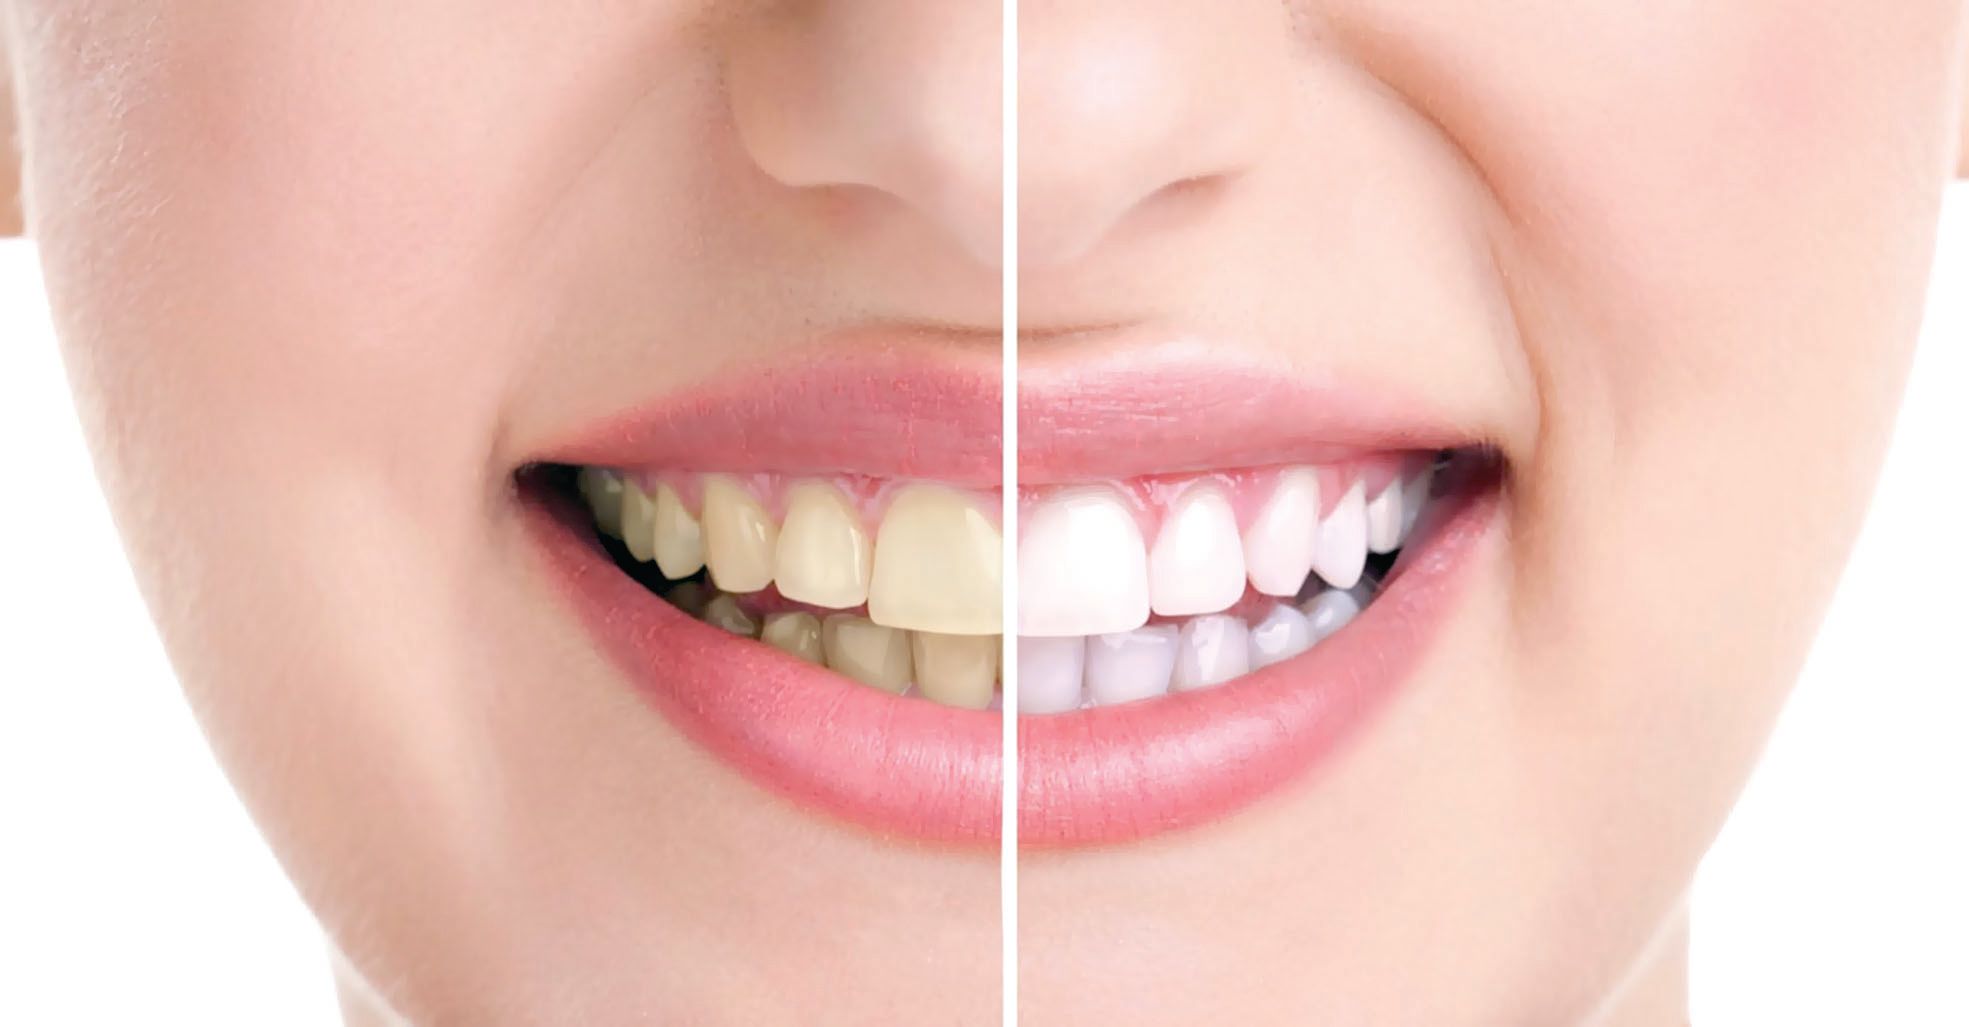 Nghe thiệt lạ nhưng là sự thật, quả cau có thể giúp làm trắng răng hiệu quả